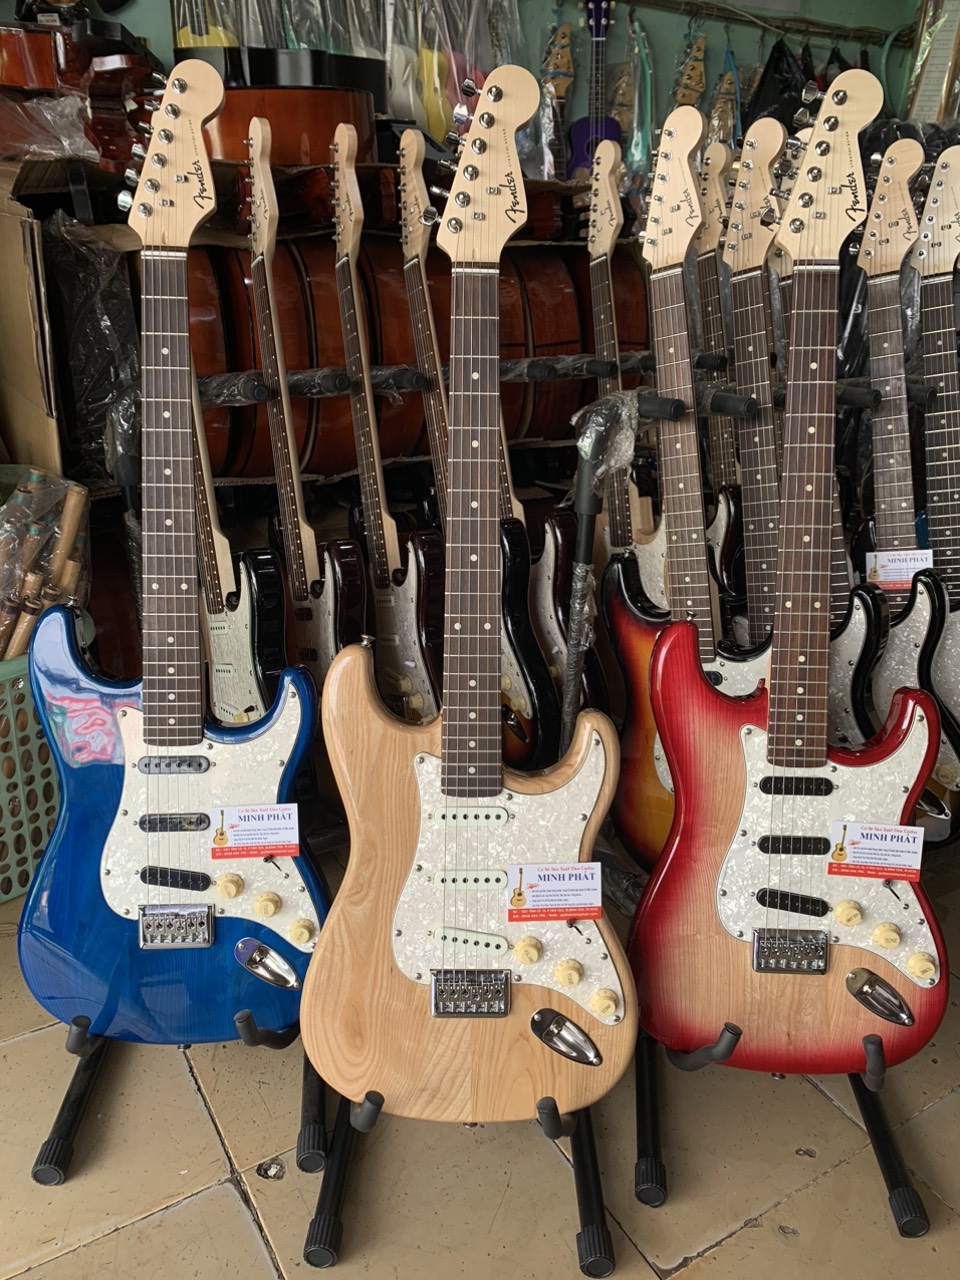 Cửa hàng bán đàn guitar điện chất lượng tại TPHCM - Minh Phát Music - 15